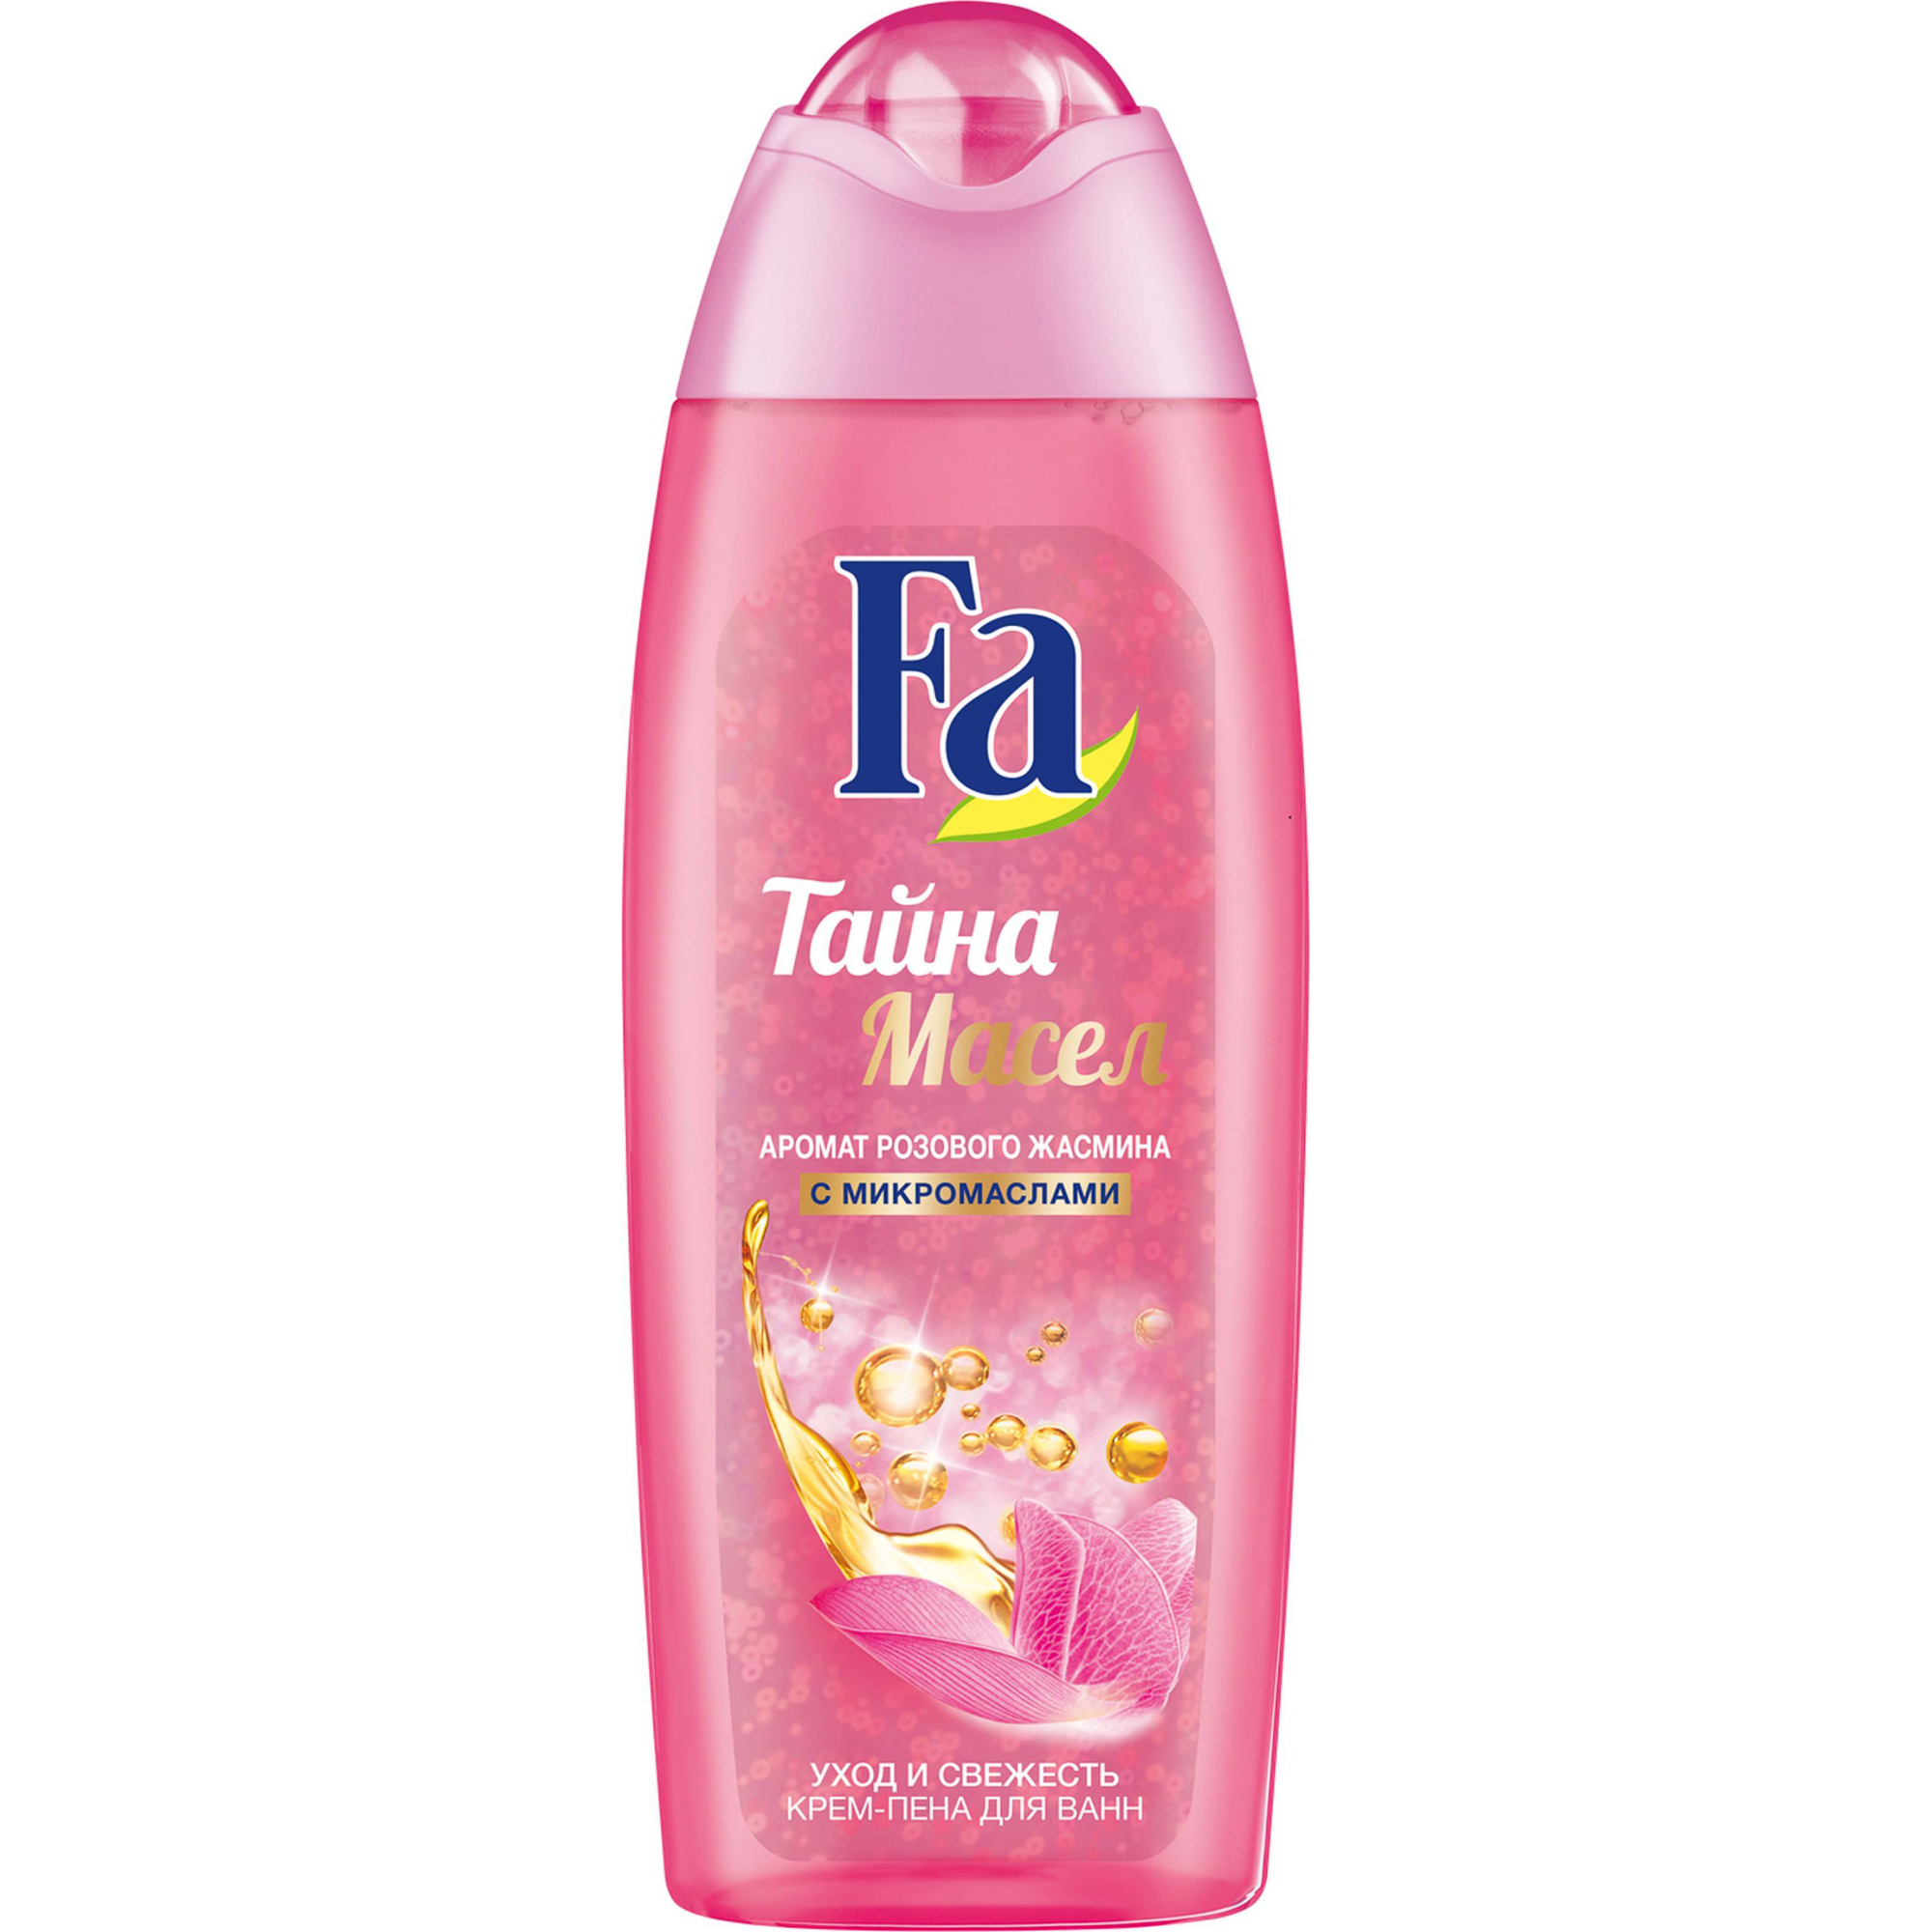 Крем-пена для ванны Fa Тайна масел розовый жасмин 500 мл пена для ванн и спа с экстрактами жасмина розового дерева и герани botany essentials luxury spa